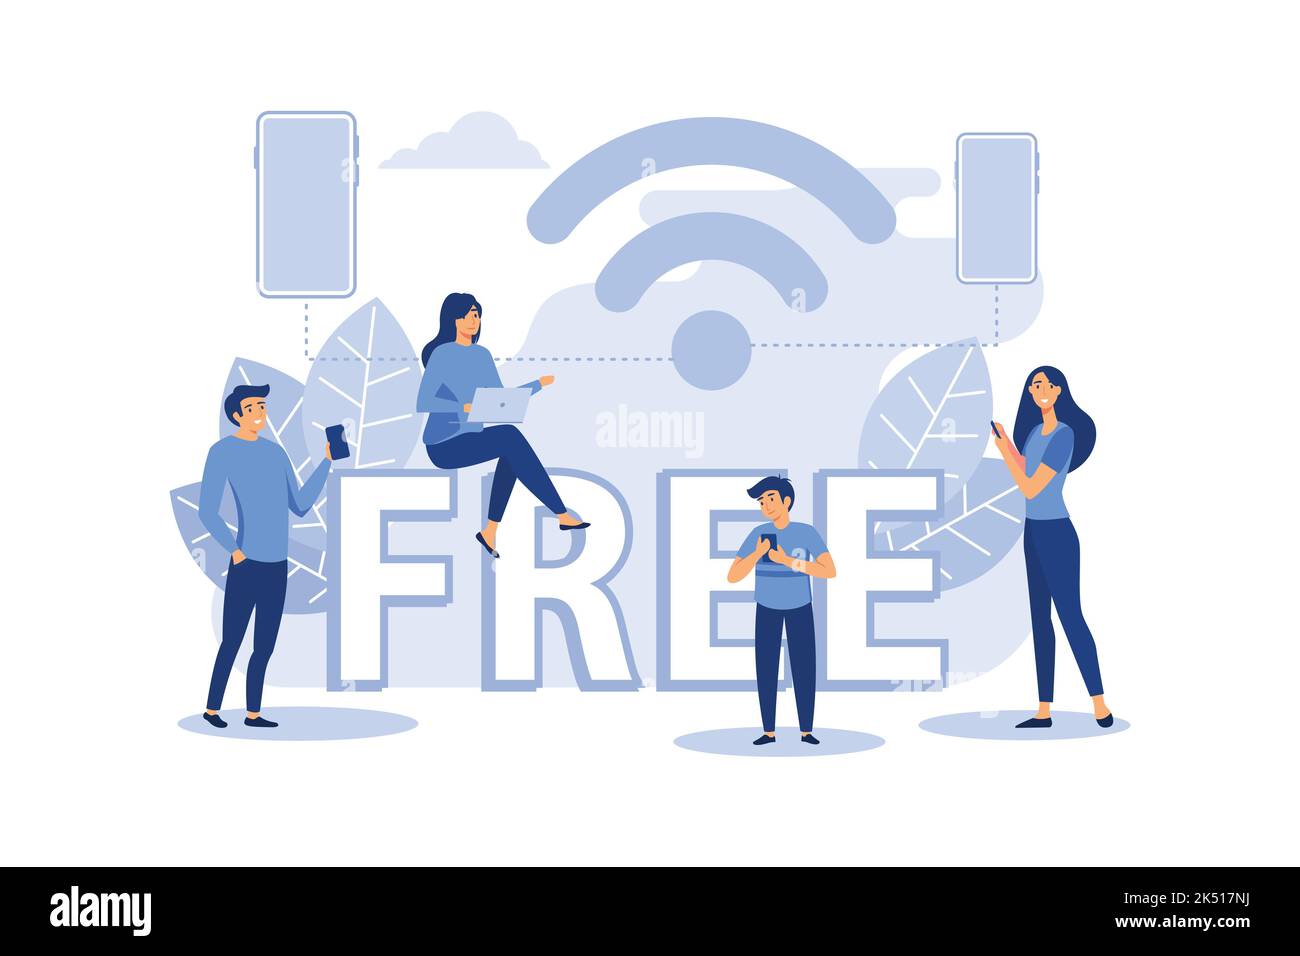 Pública conexión inalámbrica gratuita punto inalámbrico Wi-Fi, para la interfaz de usuario móvil, la transmisión de datos digitales a través de canales de radio plana vec Ilustración del Vector